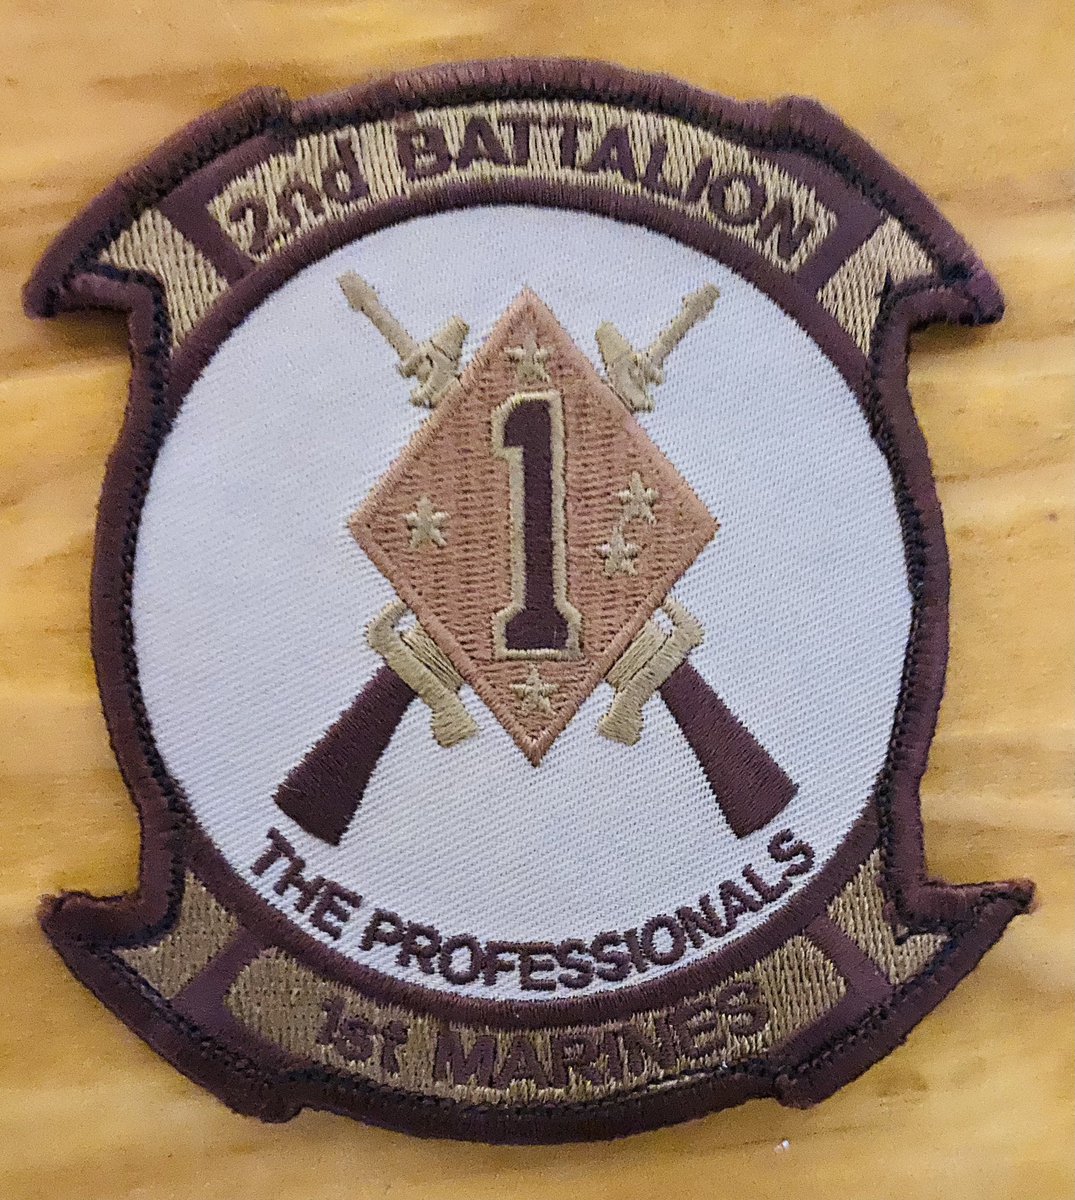 I’ve never been prouder, to be a Professional. 2nd Battalion, 1st Marines #shonabashona 🇦🇫 @usmc